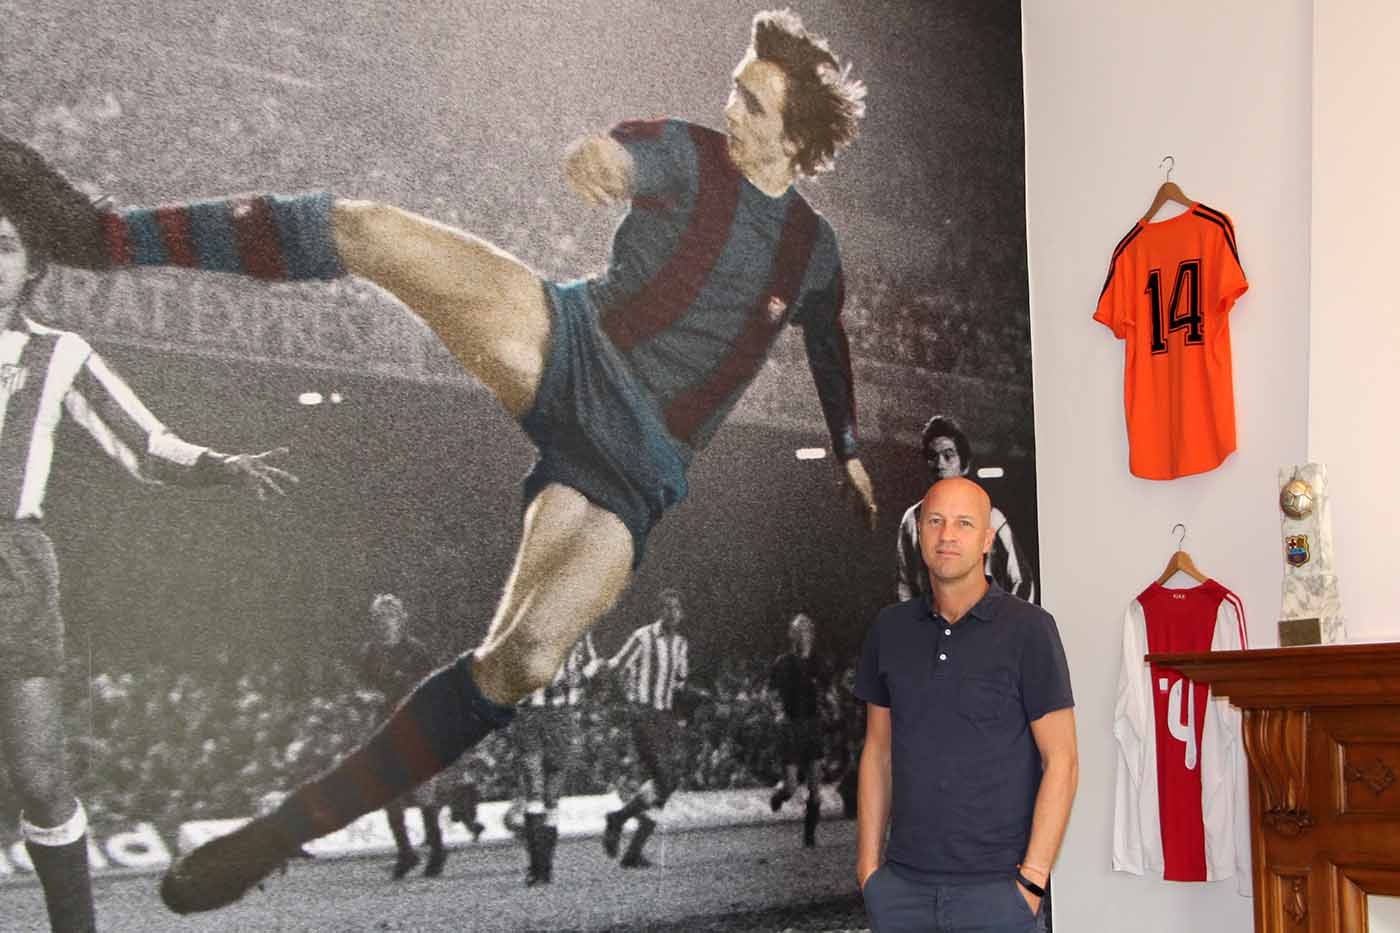 Jordi Cruijff: “Mijn vader stond erop dat ik naast het voetbal ook studeerde” - Johan Cruyff Academy